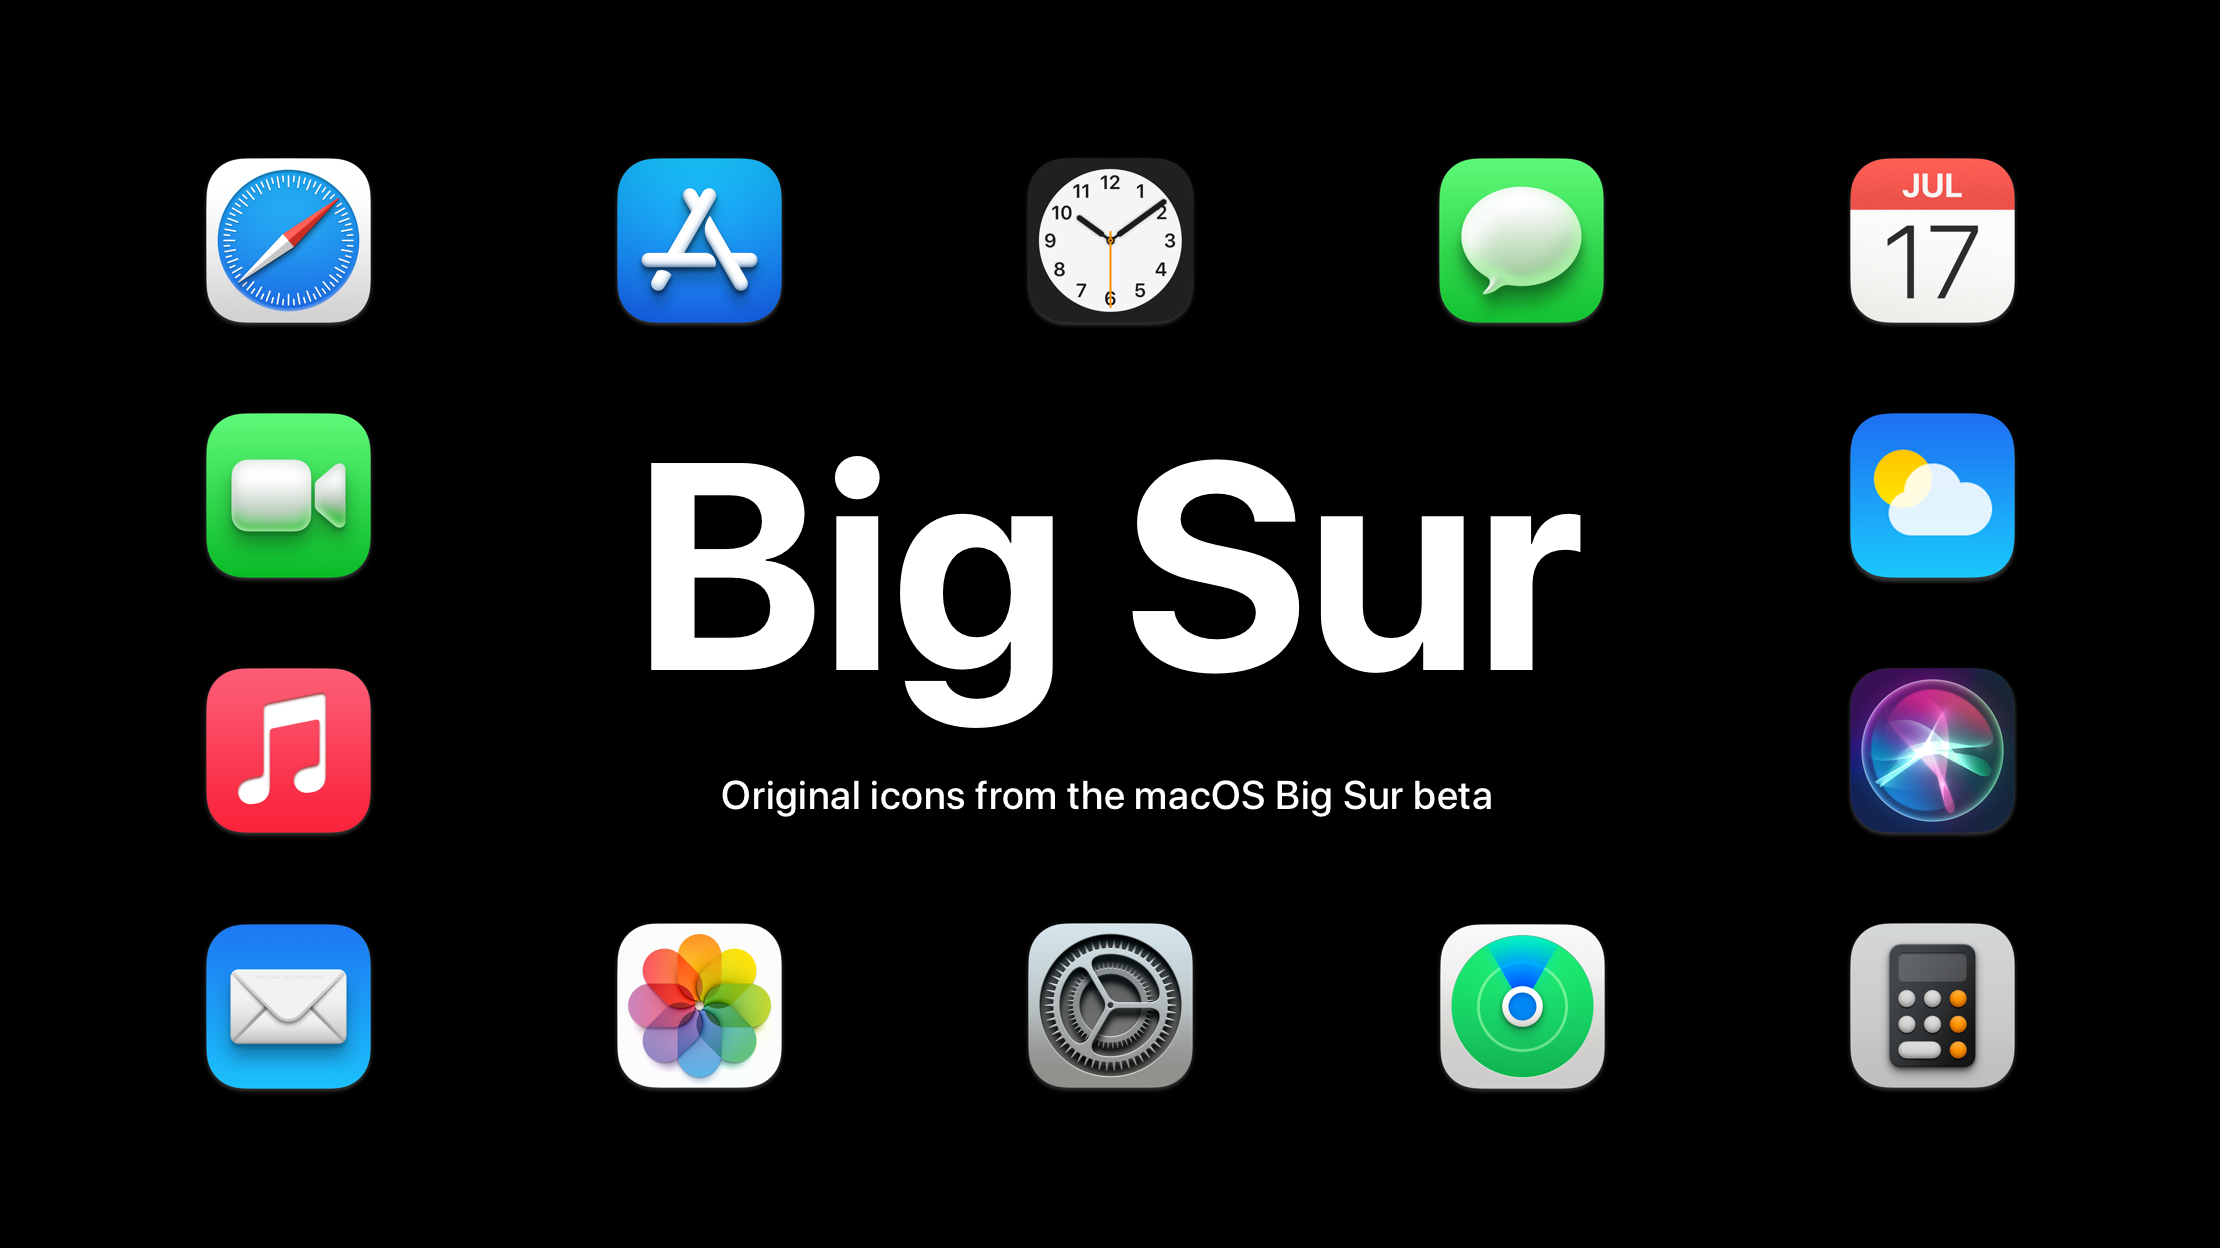 macos big sur icons download